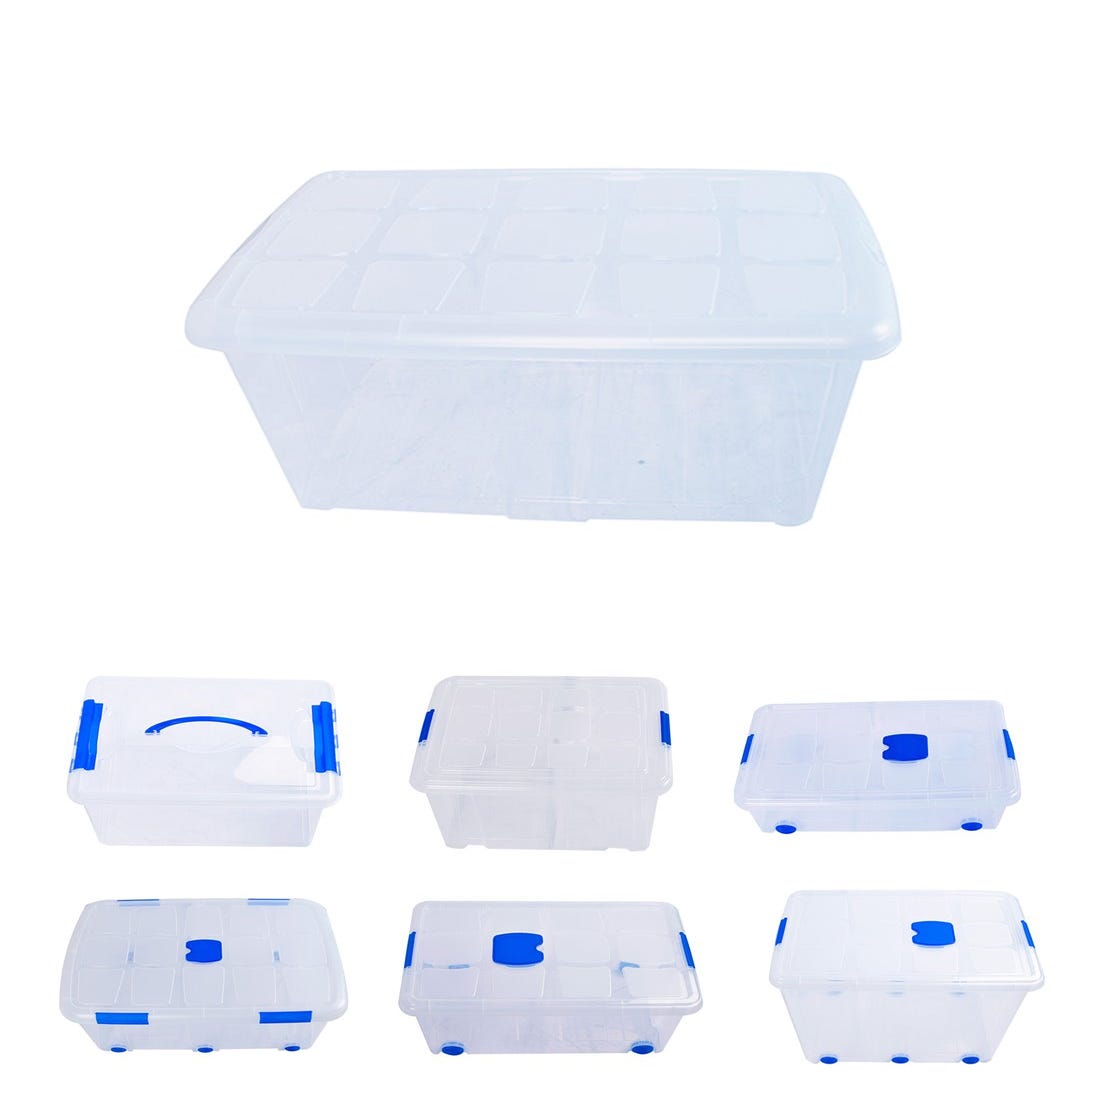 Cajas de Almacenaje Transparentes – Cajas Organizadoras de Plástico con  Tapa, Pack 4 uds (60L)